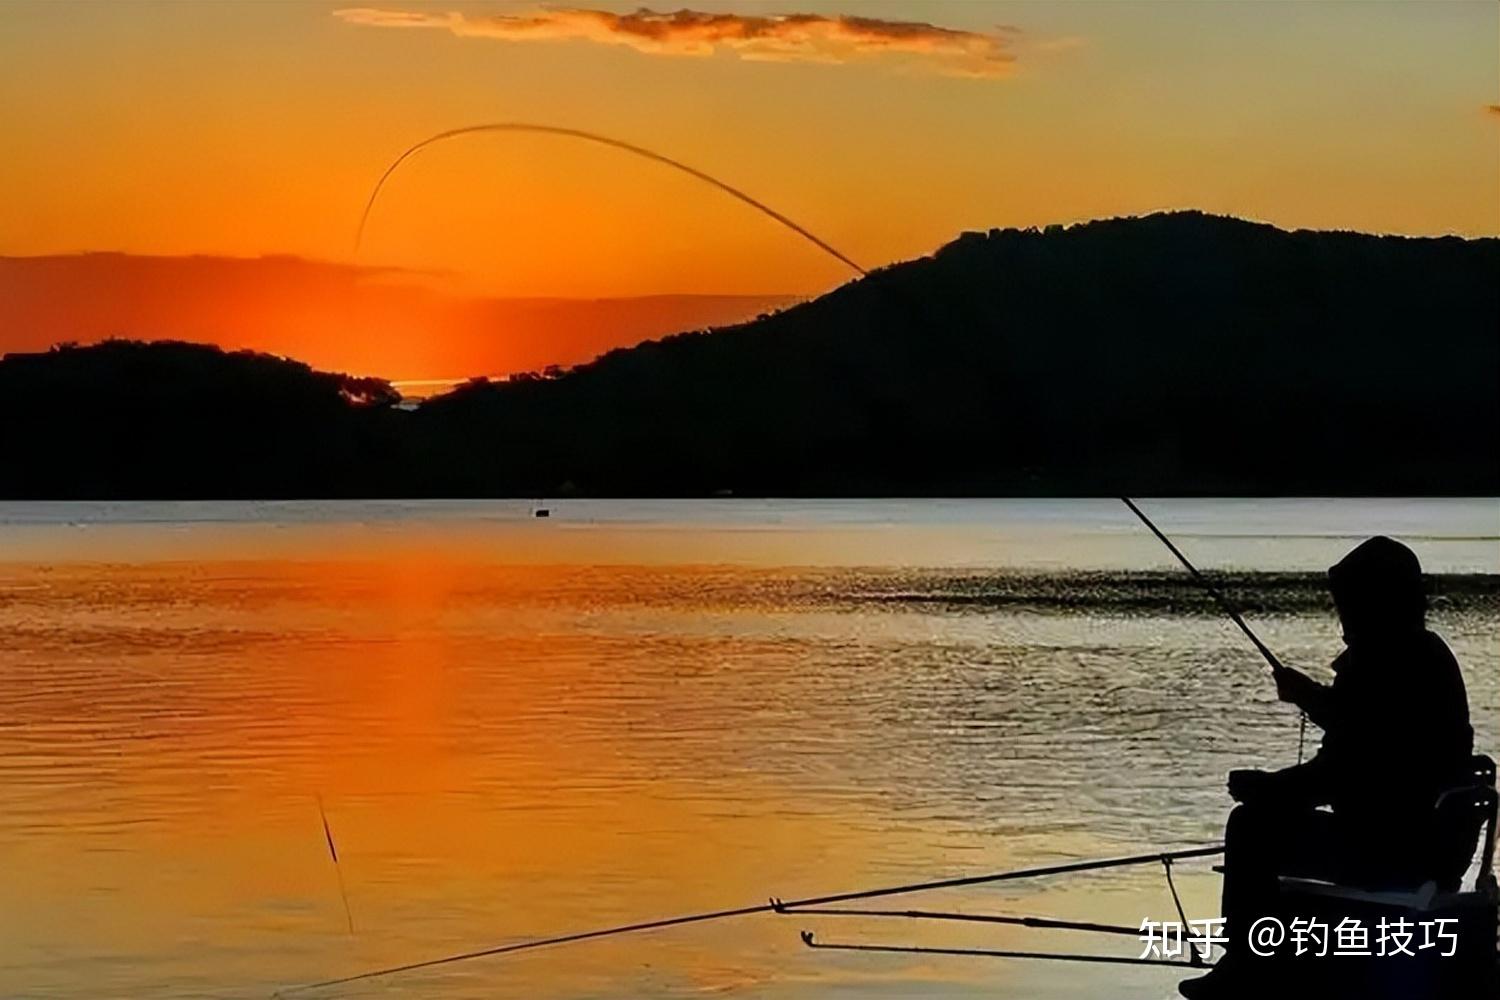 2019年济南市第三十届钓鱼比赛在天天渔钓鱼基地完美落幕 - 天天渔 - 有了天天渔 天天都上鱼